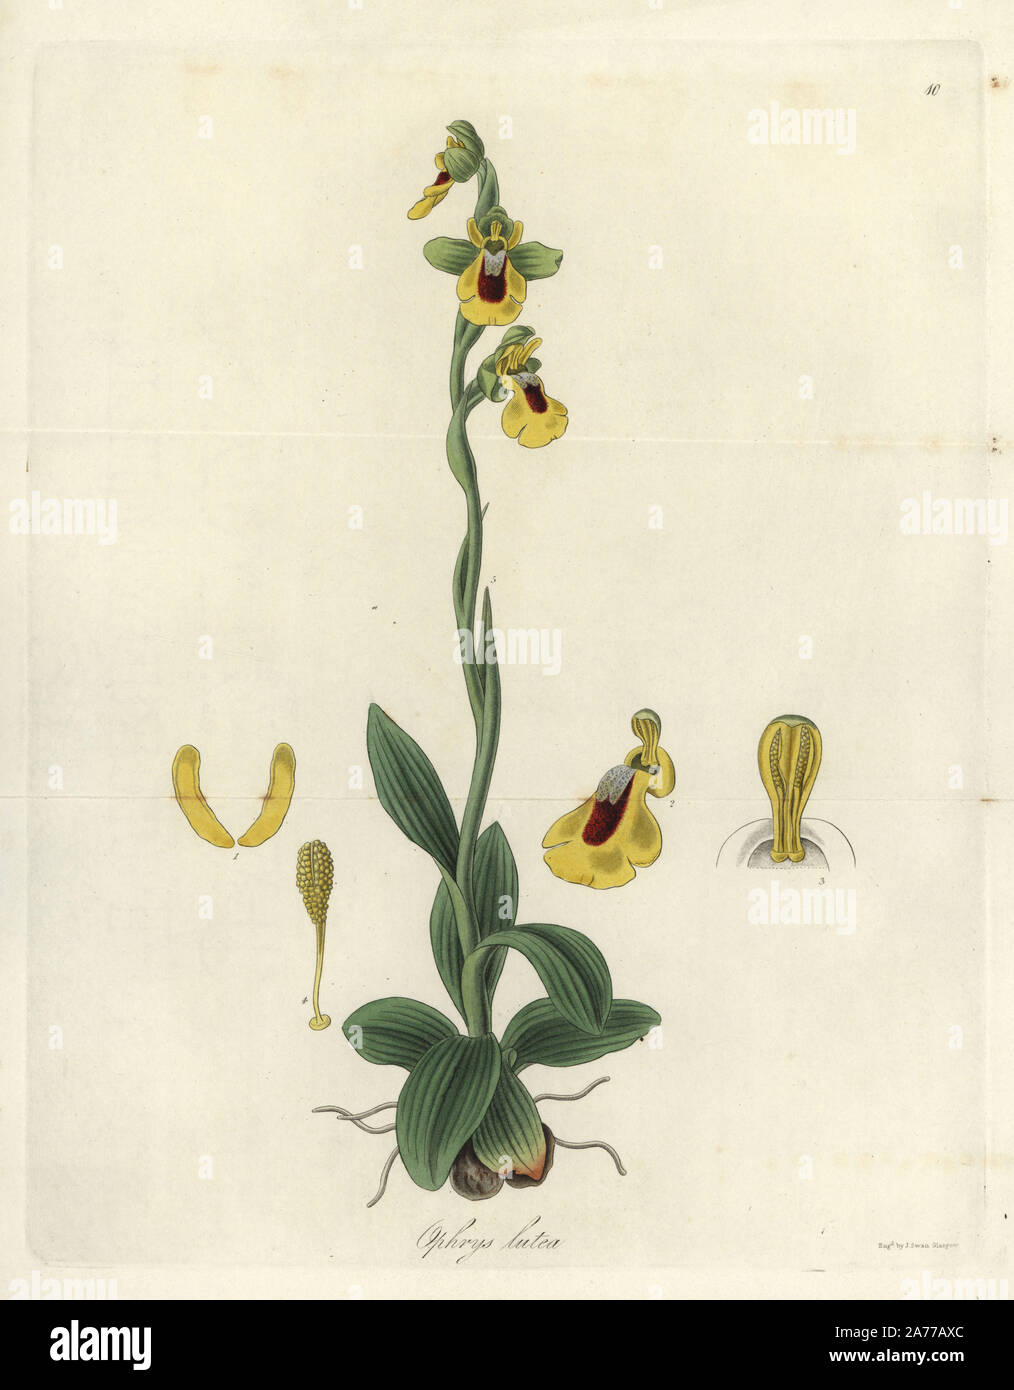 Gelbe Orchidee, ophrys Ophrys lutea. Papierkörbe Kupferstich von J.Schwan nach einem botanischen Abbildung von William Jackson Hooker aus seinem eigenen "exotische Flora", Blackwood, Edinburgh, 1823. Hooker (1785-1865) war ein englischer Botaniker spezialisiert auf Orchideen und Farne, und war Direktor der Königlichen Botanischen Gärten in Kew von 1841. Stockfoto